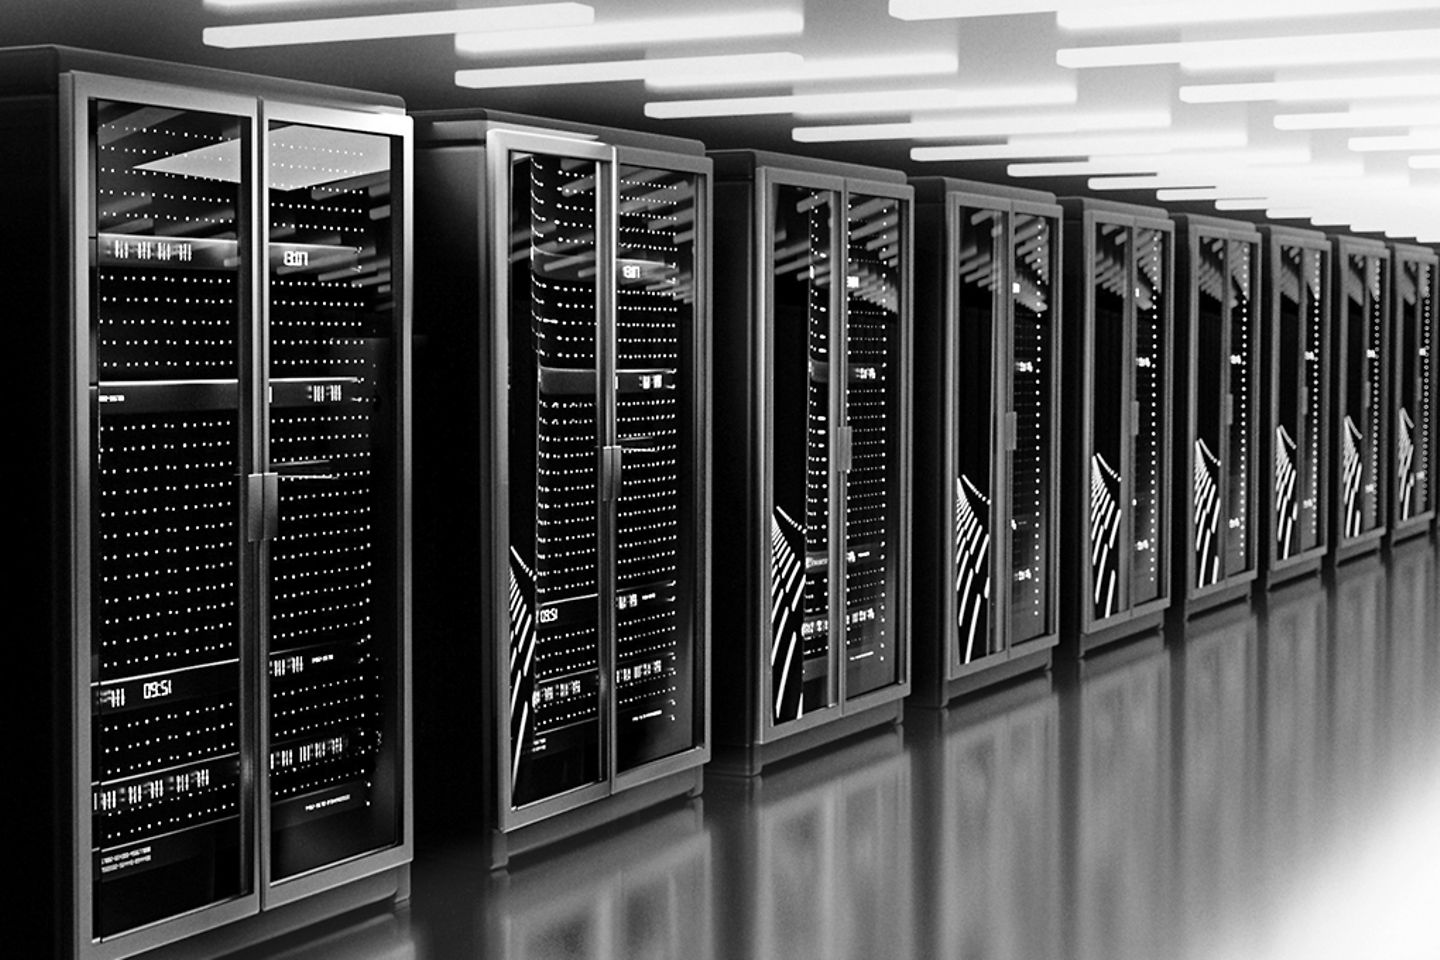 schwarz weiß Bild von einer Reihe Serverschränken 